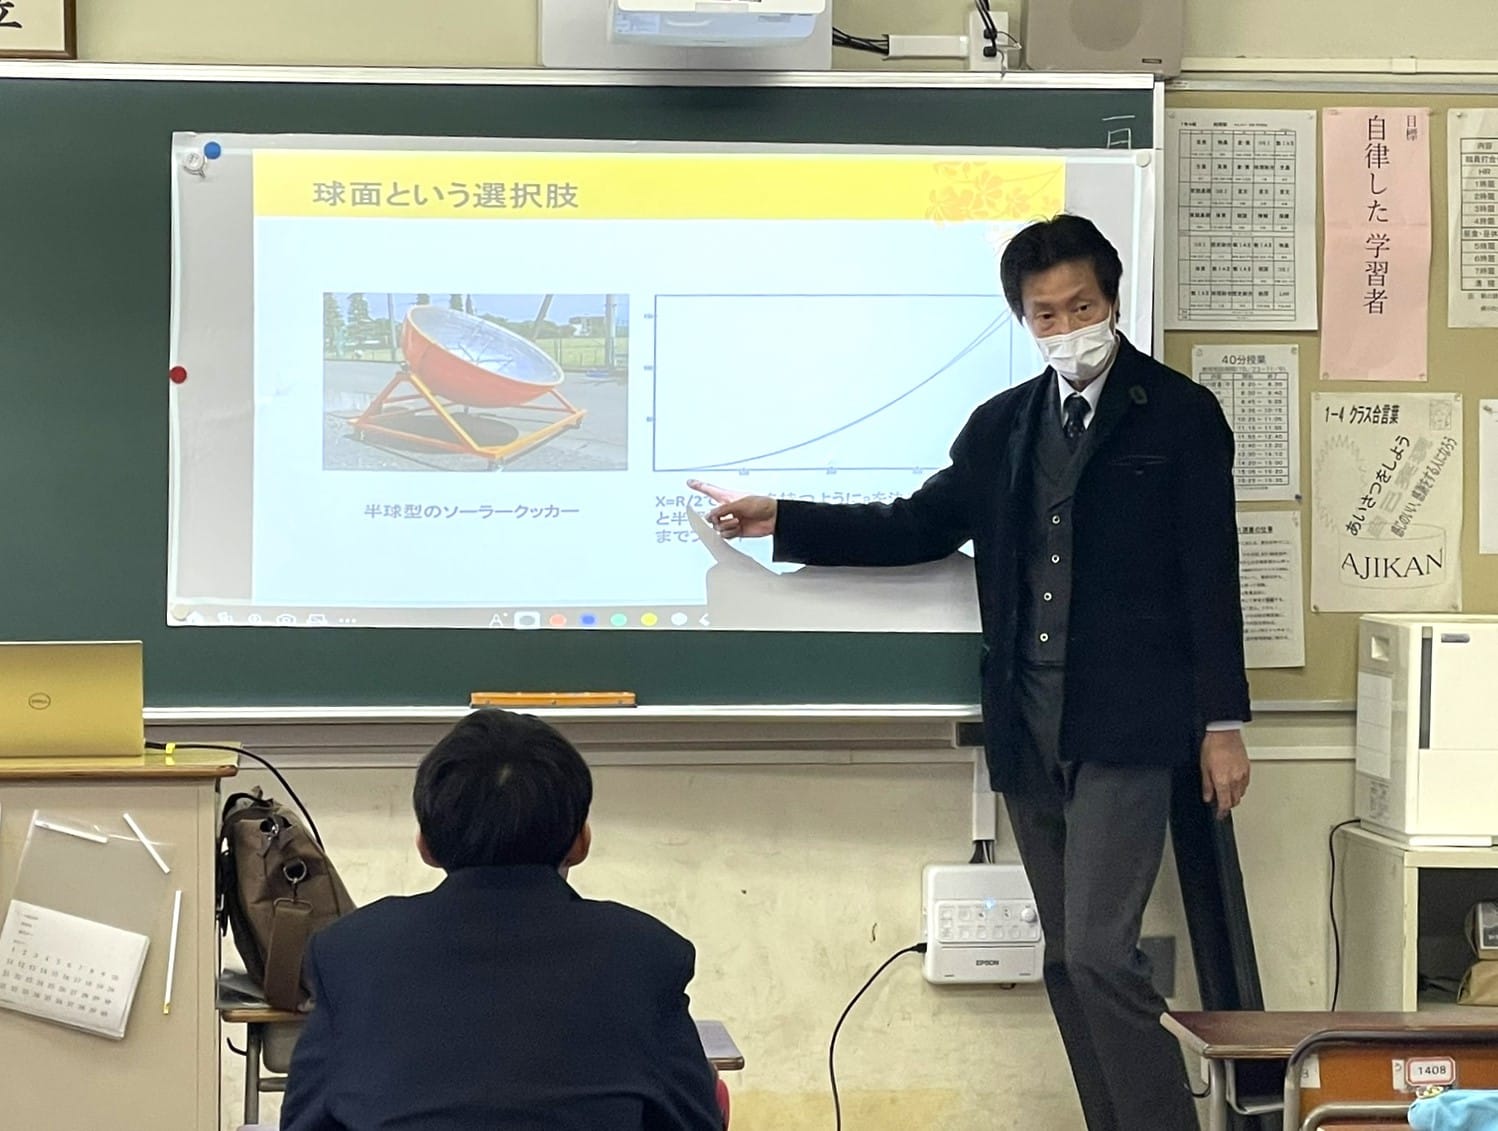 工学部機械分野（自然エネルギーコース）の中條祐一教授と看護学部の荻原弘幸講師が、栃木県立佐野高校で９０分間の講義を行いました。